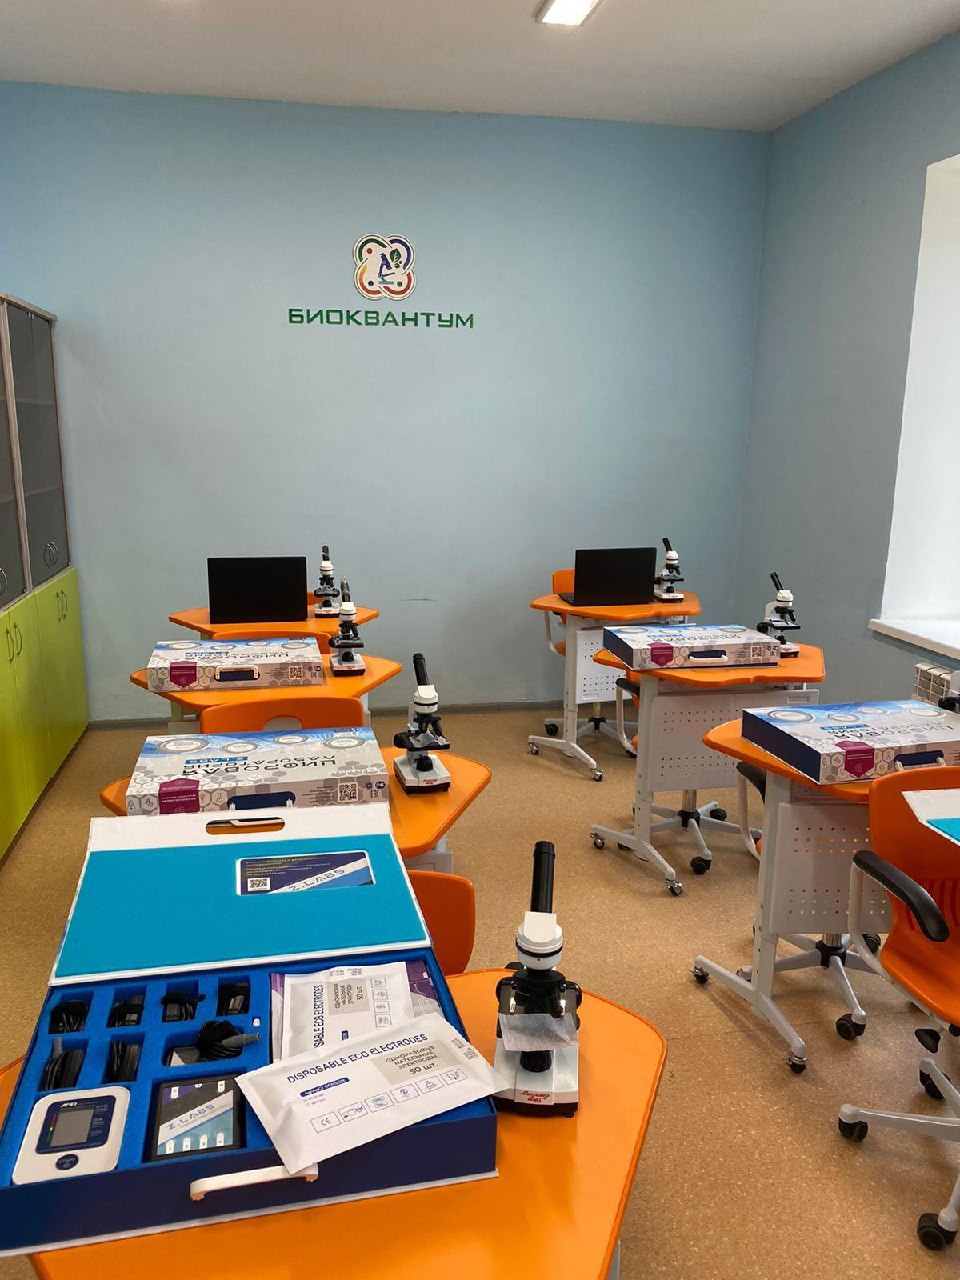 Школьный Кванториум открылся в Саха политехническом лицее Якутска